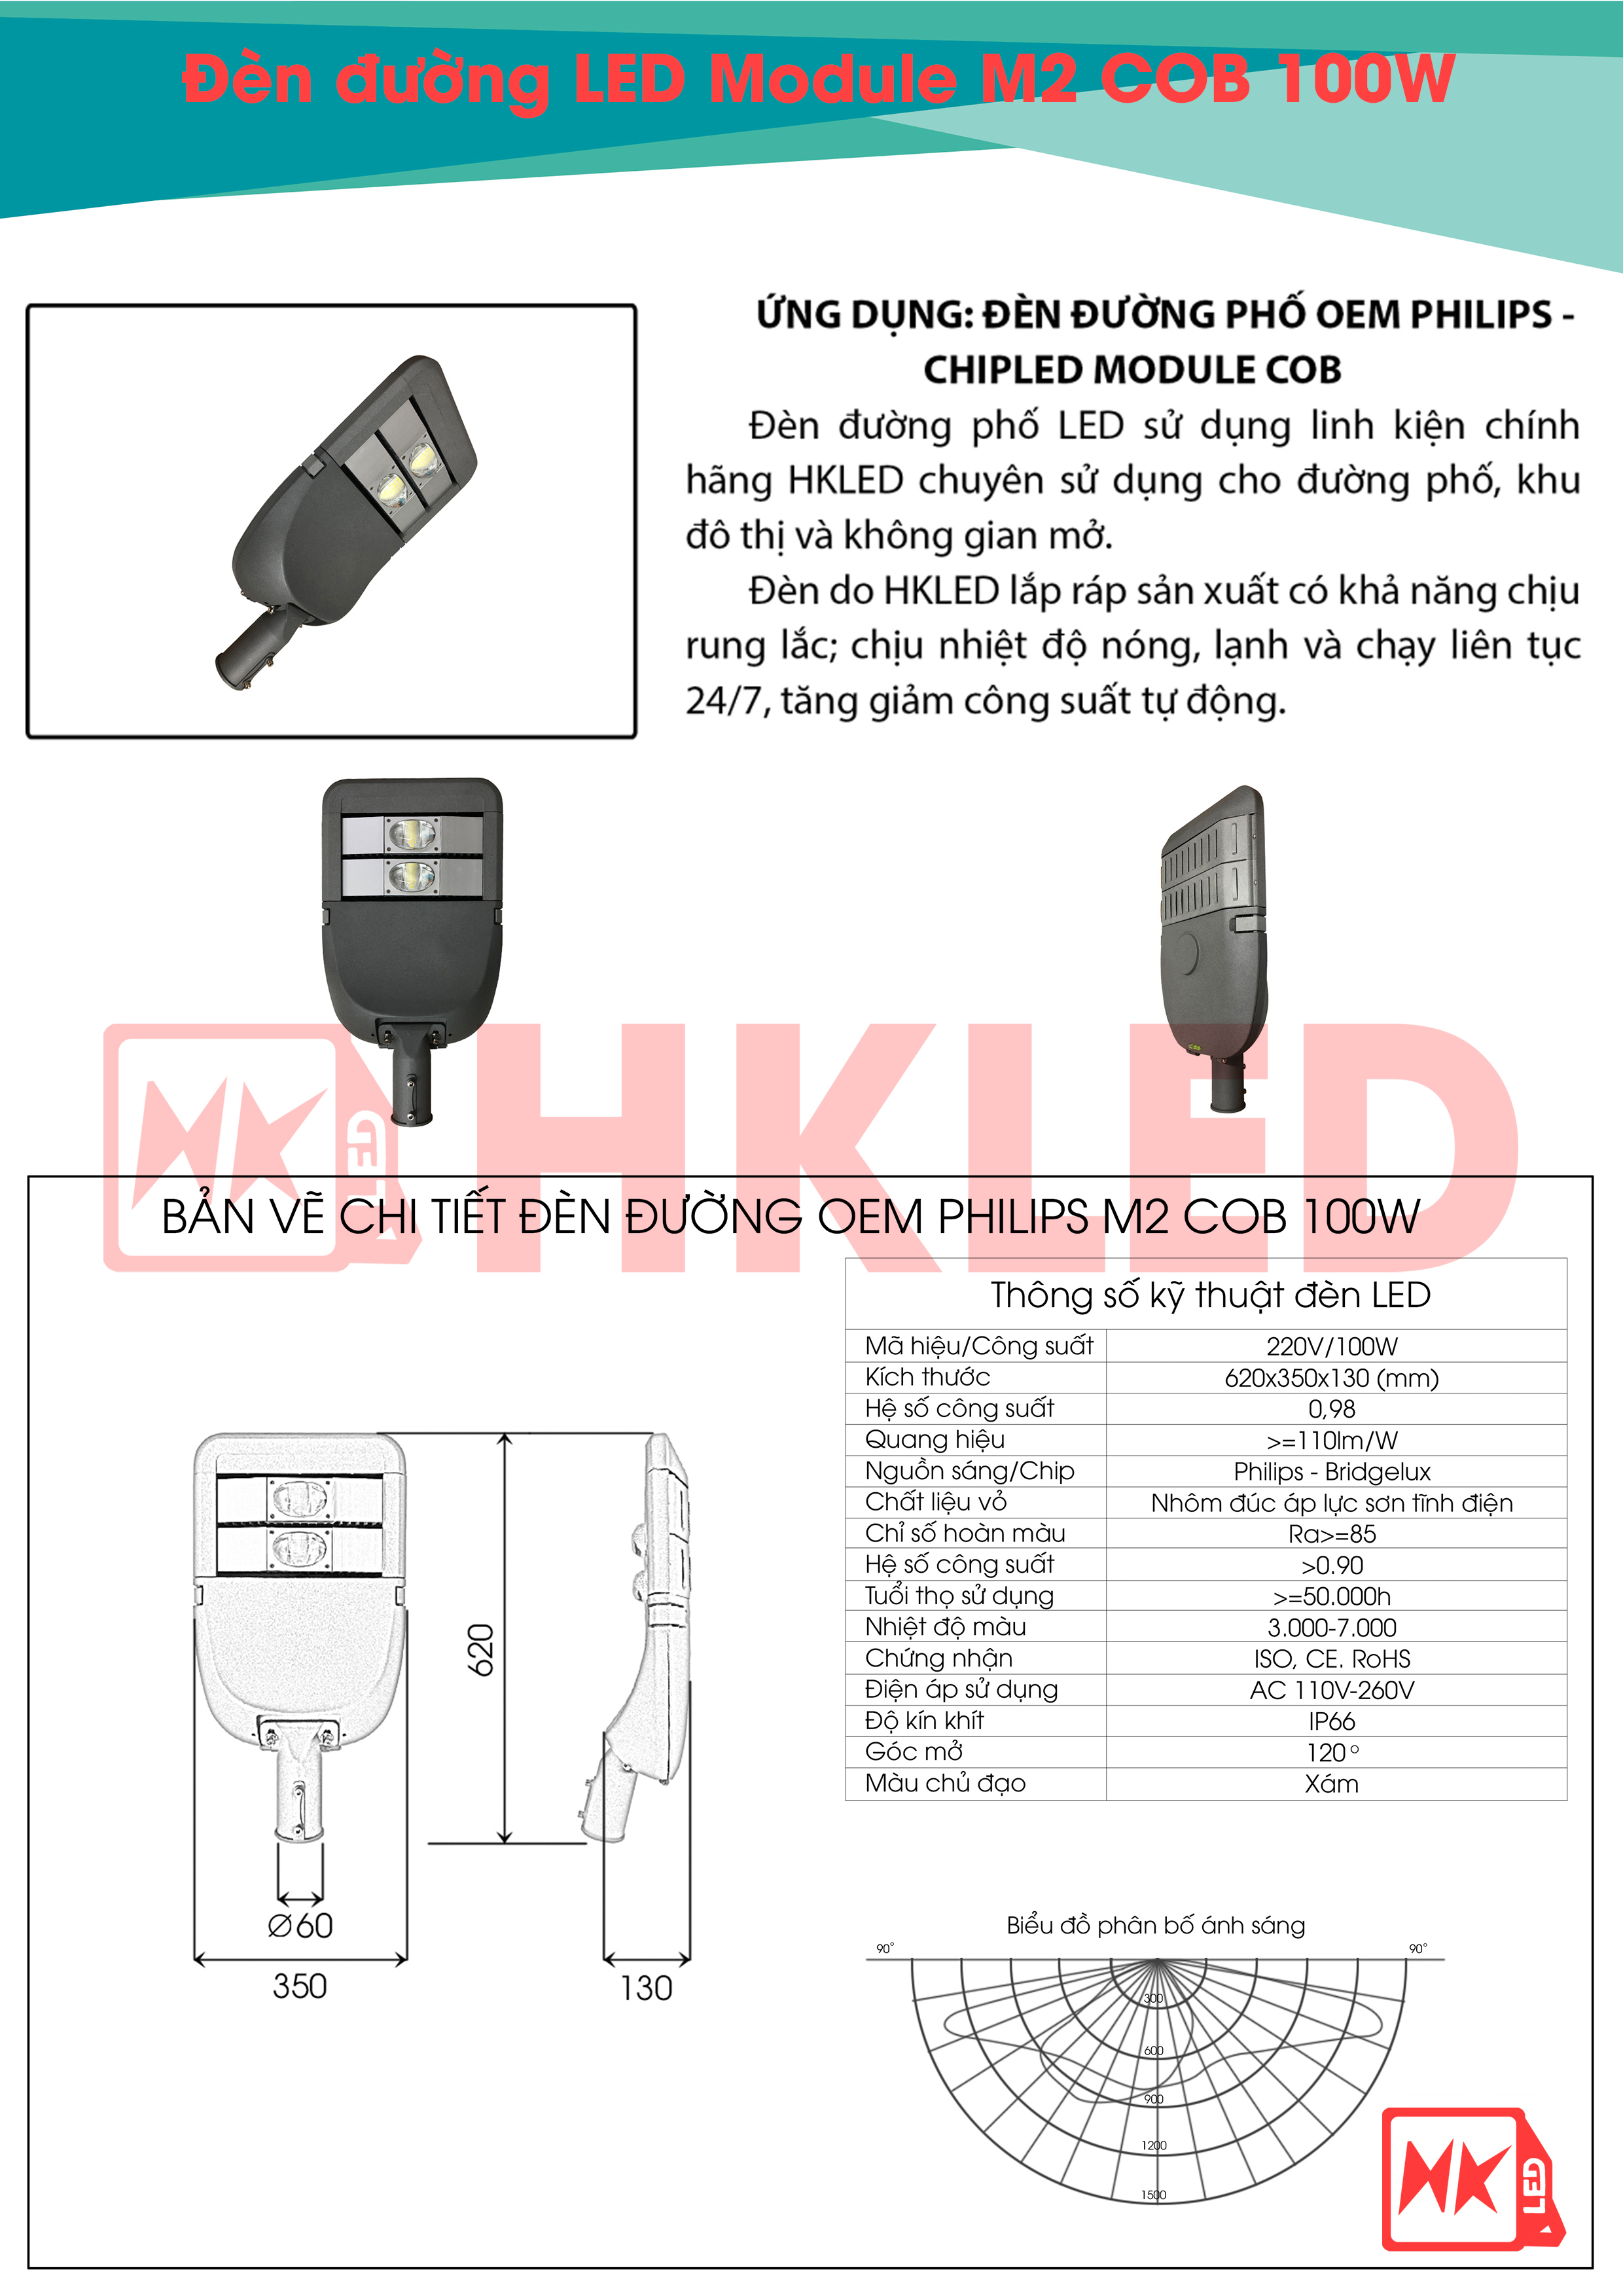 Ứng dụng, bản vẽ chi tiết và thông số kỹ thuật đèn đường LED OEM Philips M2 Module COB 100W